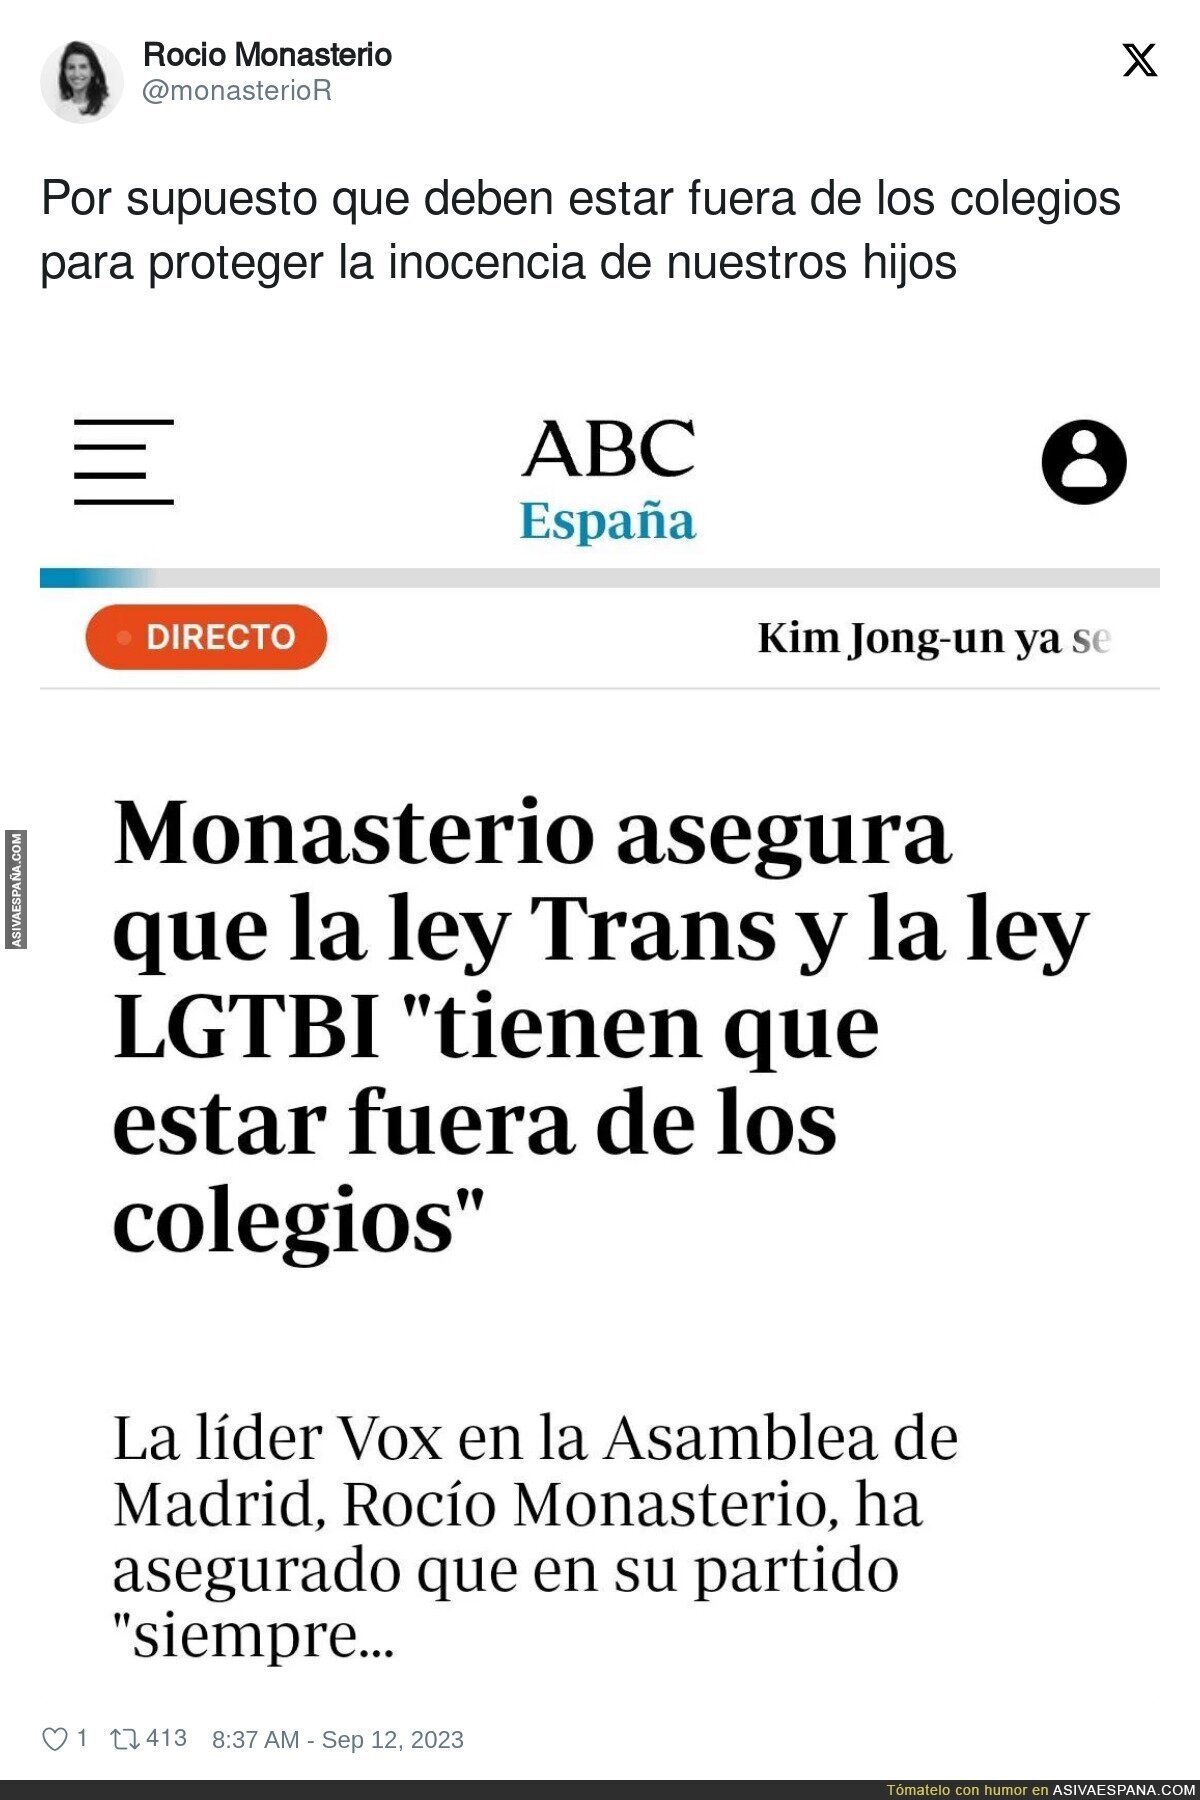 La postura de Rocío Monasterio frente a la ley Trans